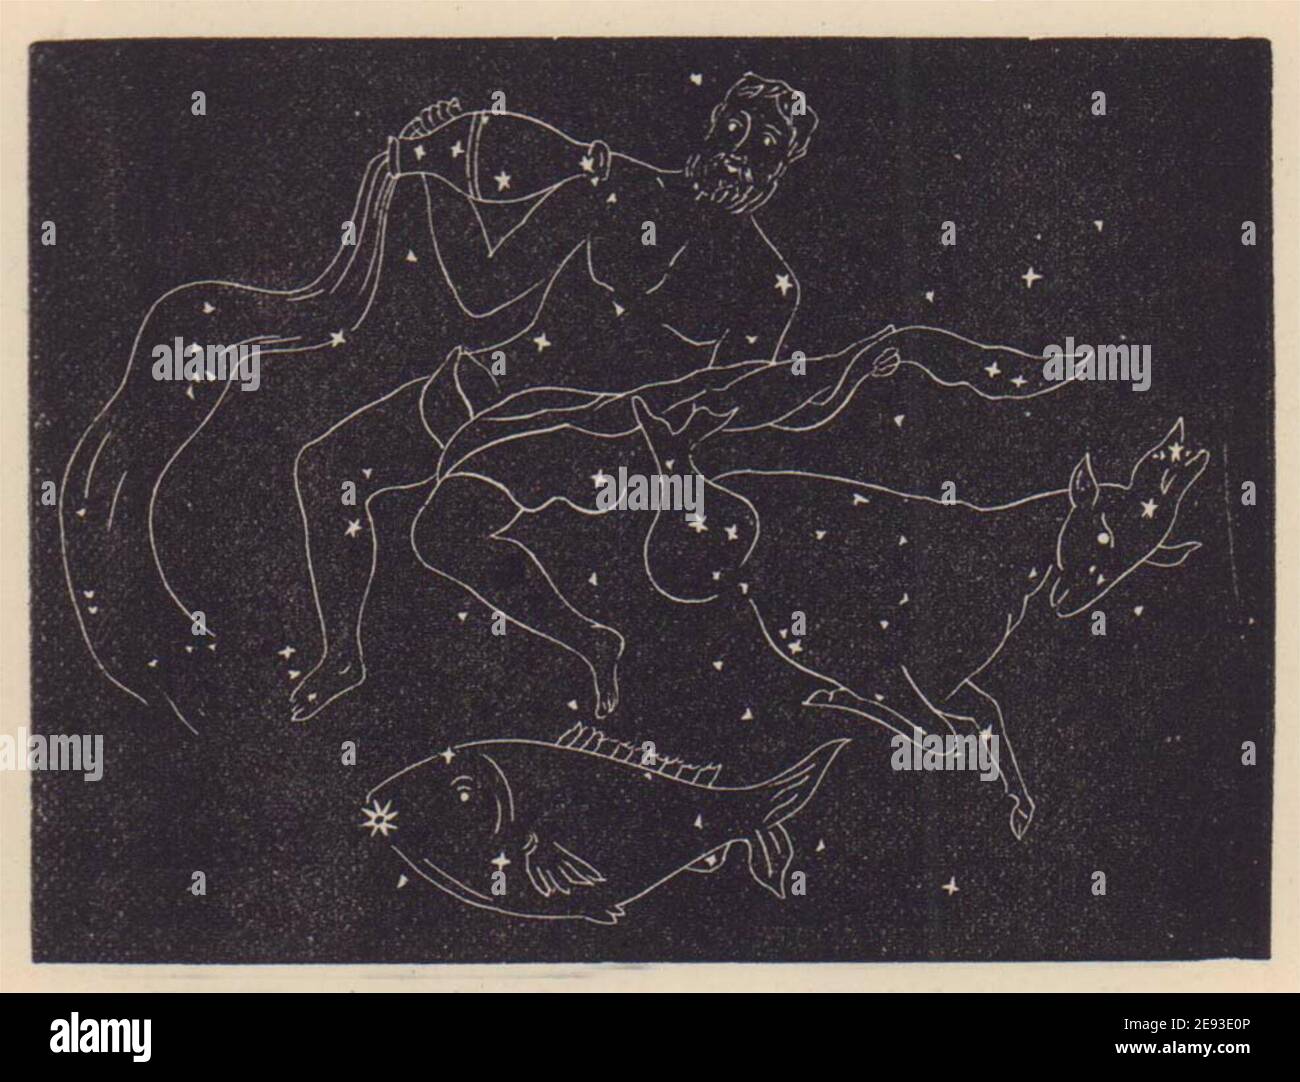 Acuario, Capricornus y Piscis Australis. Gráfico de estrellas. PEQUEÑO. PROCTOR 1882 Foto de stock